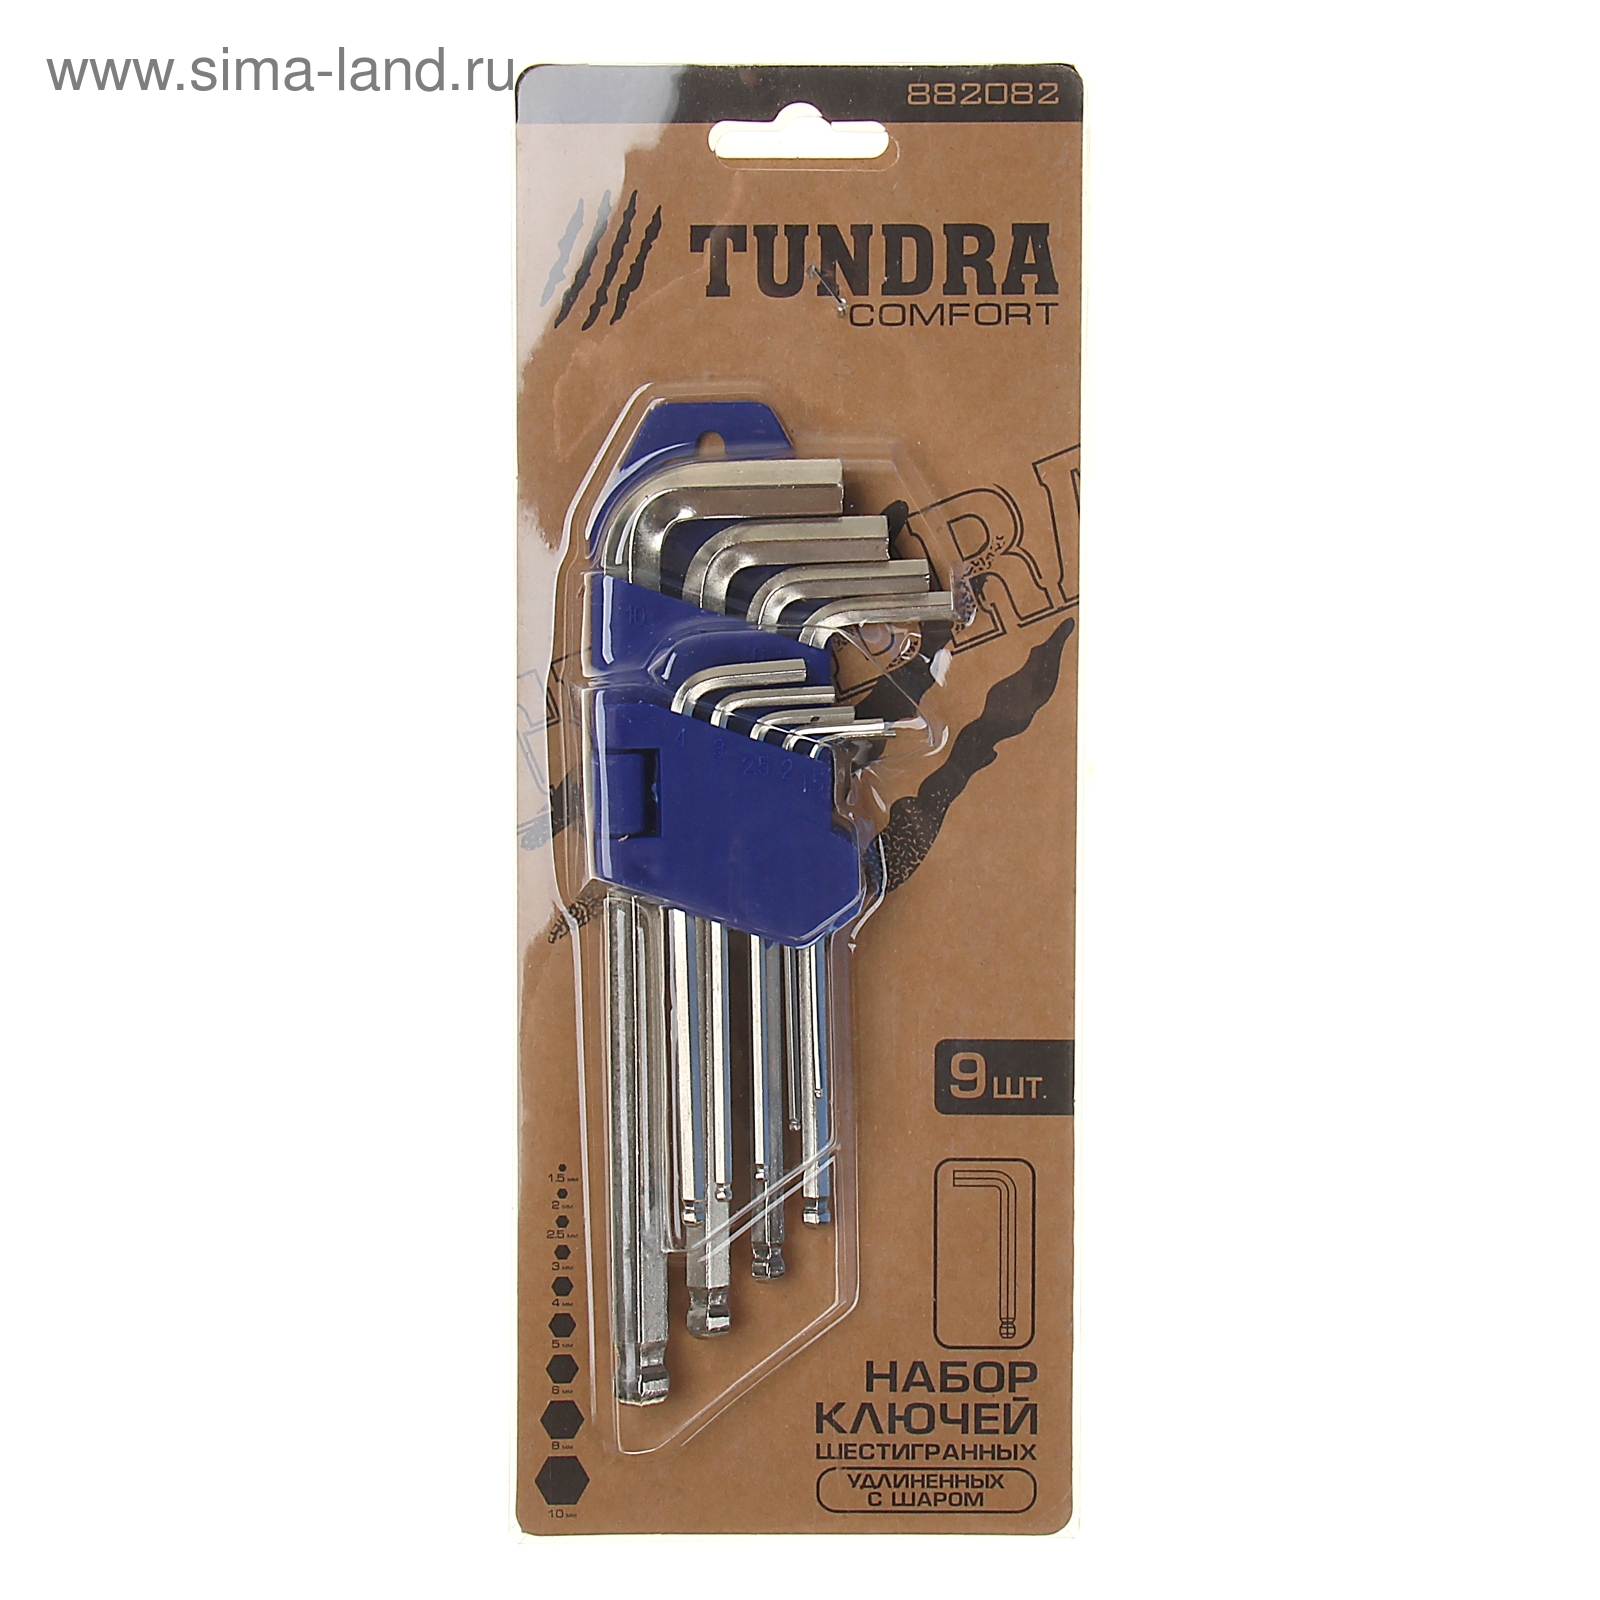 Набор ключей шестигранников TUNDRA comfort, 1.5 - 10 мм 9 штук, с шаром, удлиненные